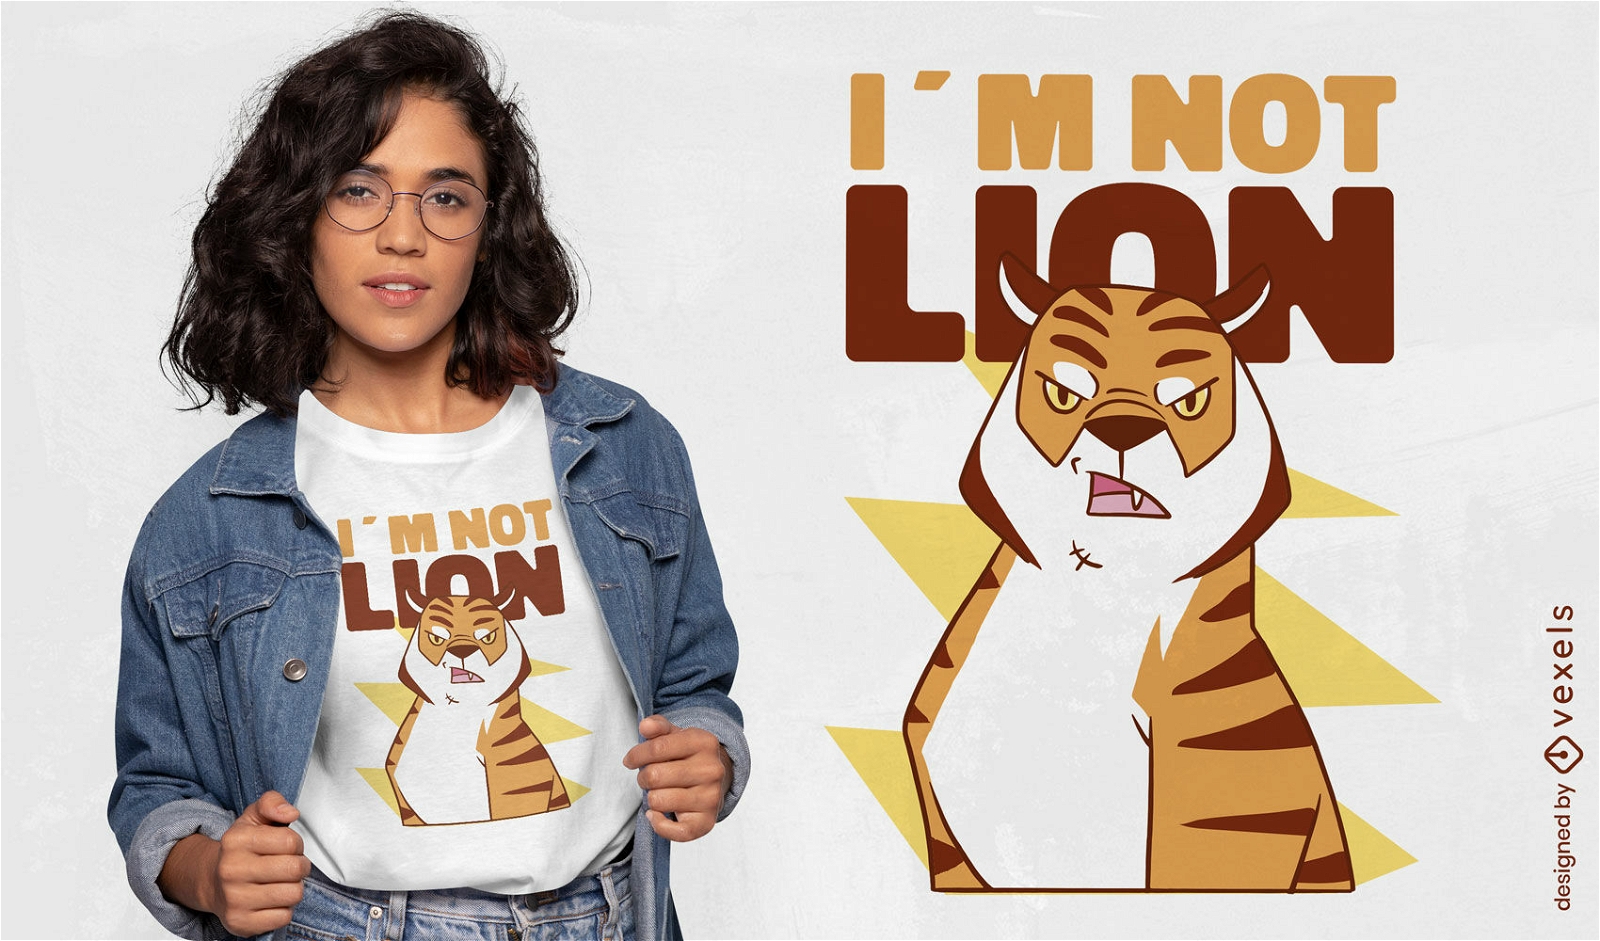 No soy un dise?o de camiseta de tigre le?n.